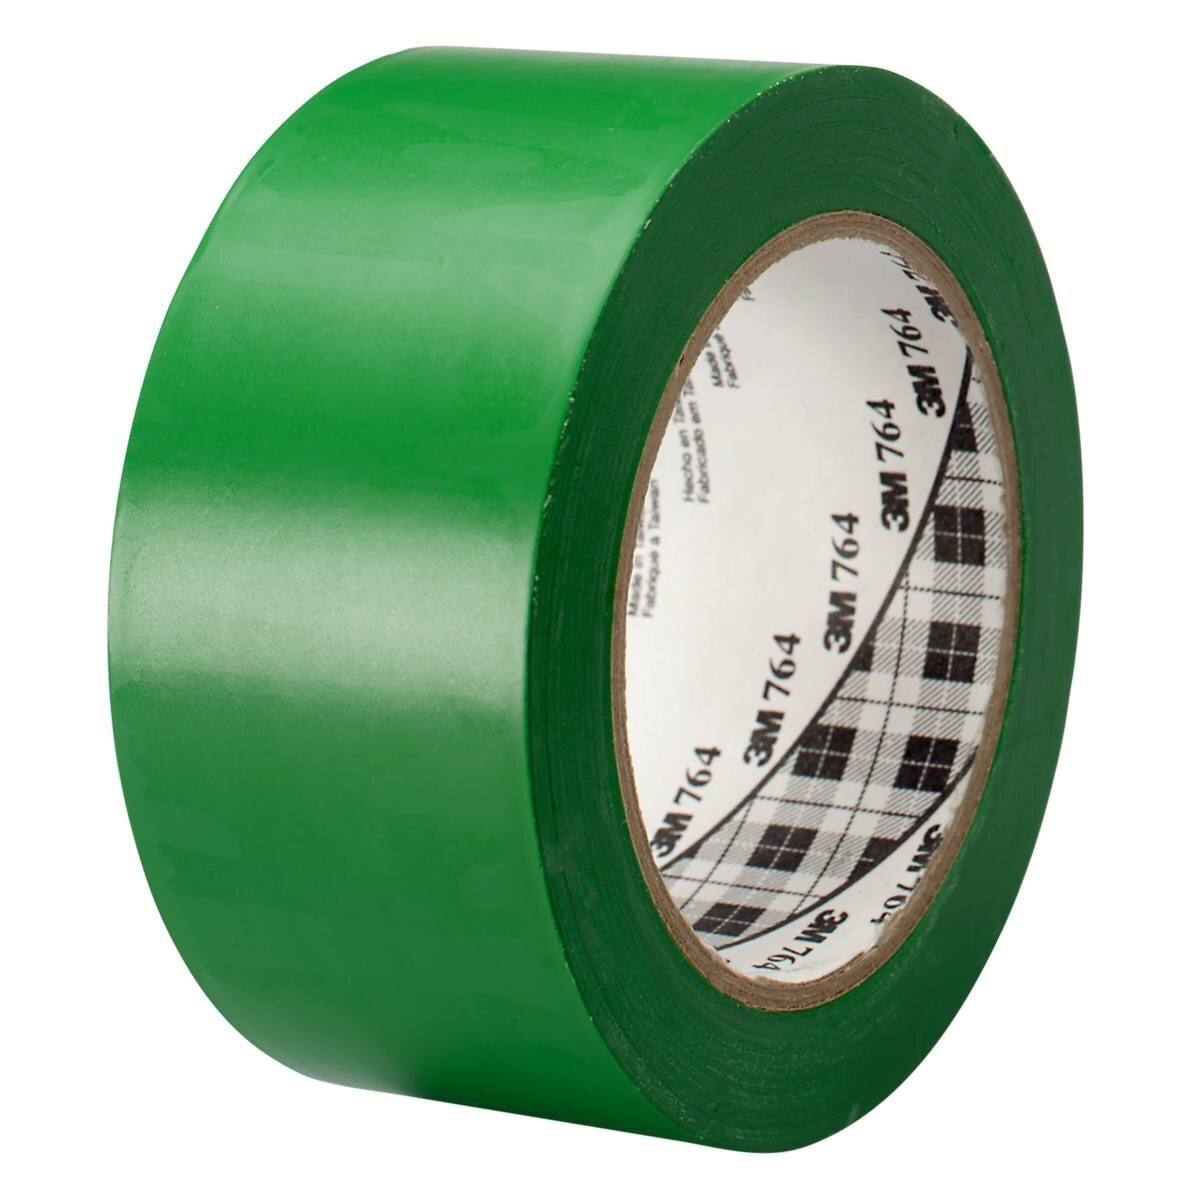 3M ruban adhésif polyvalent en PVC 764, vert, 50 mm x 33 m, emballage individuel pratique